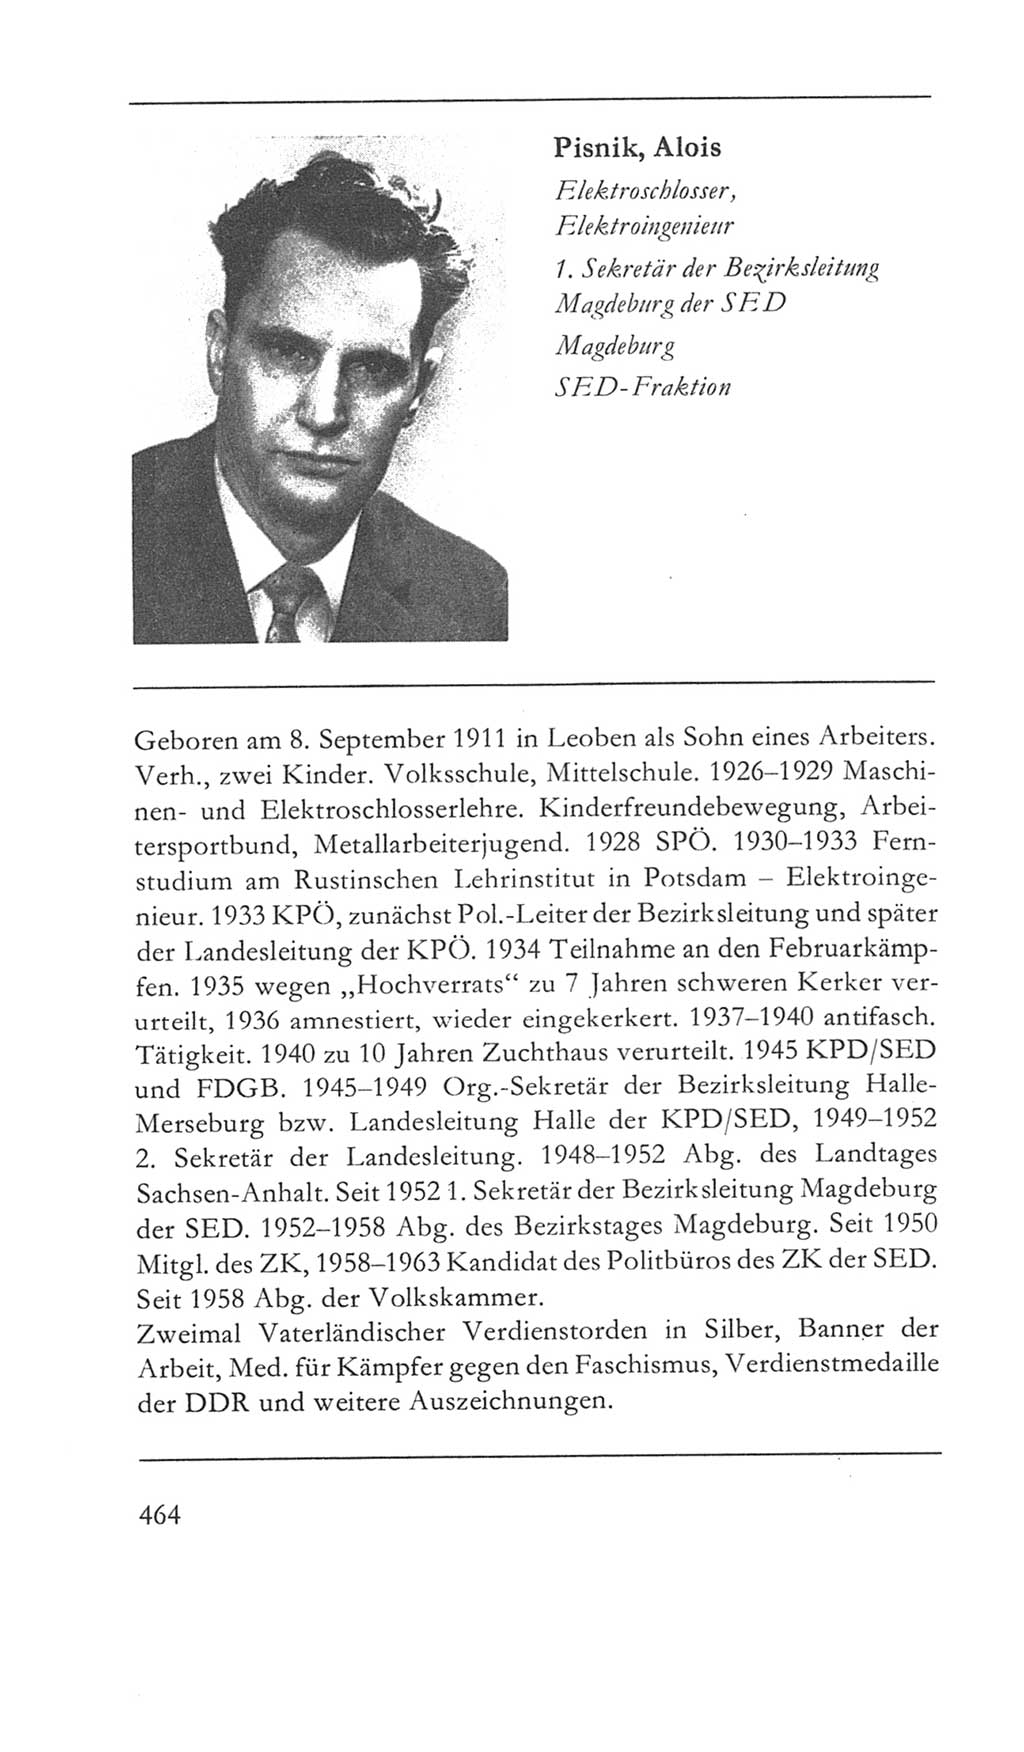 Volkskammer (VK) der Deutschen Demokratischen Republik (DDR) 5. Wahlperiode 1967-1971, Seite 464 (VK. DDR 5. WP. 1967-1971, S. 464)